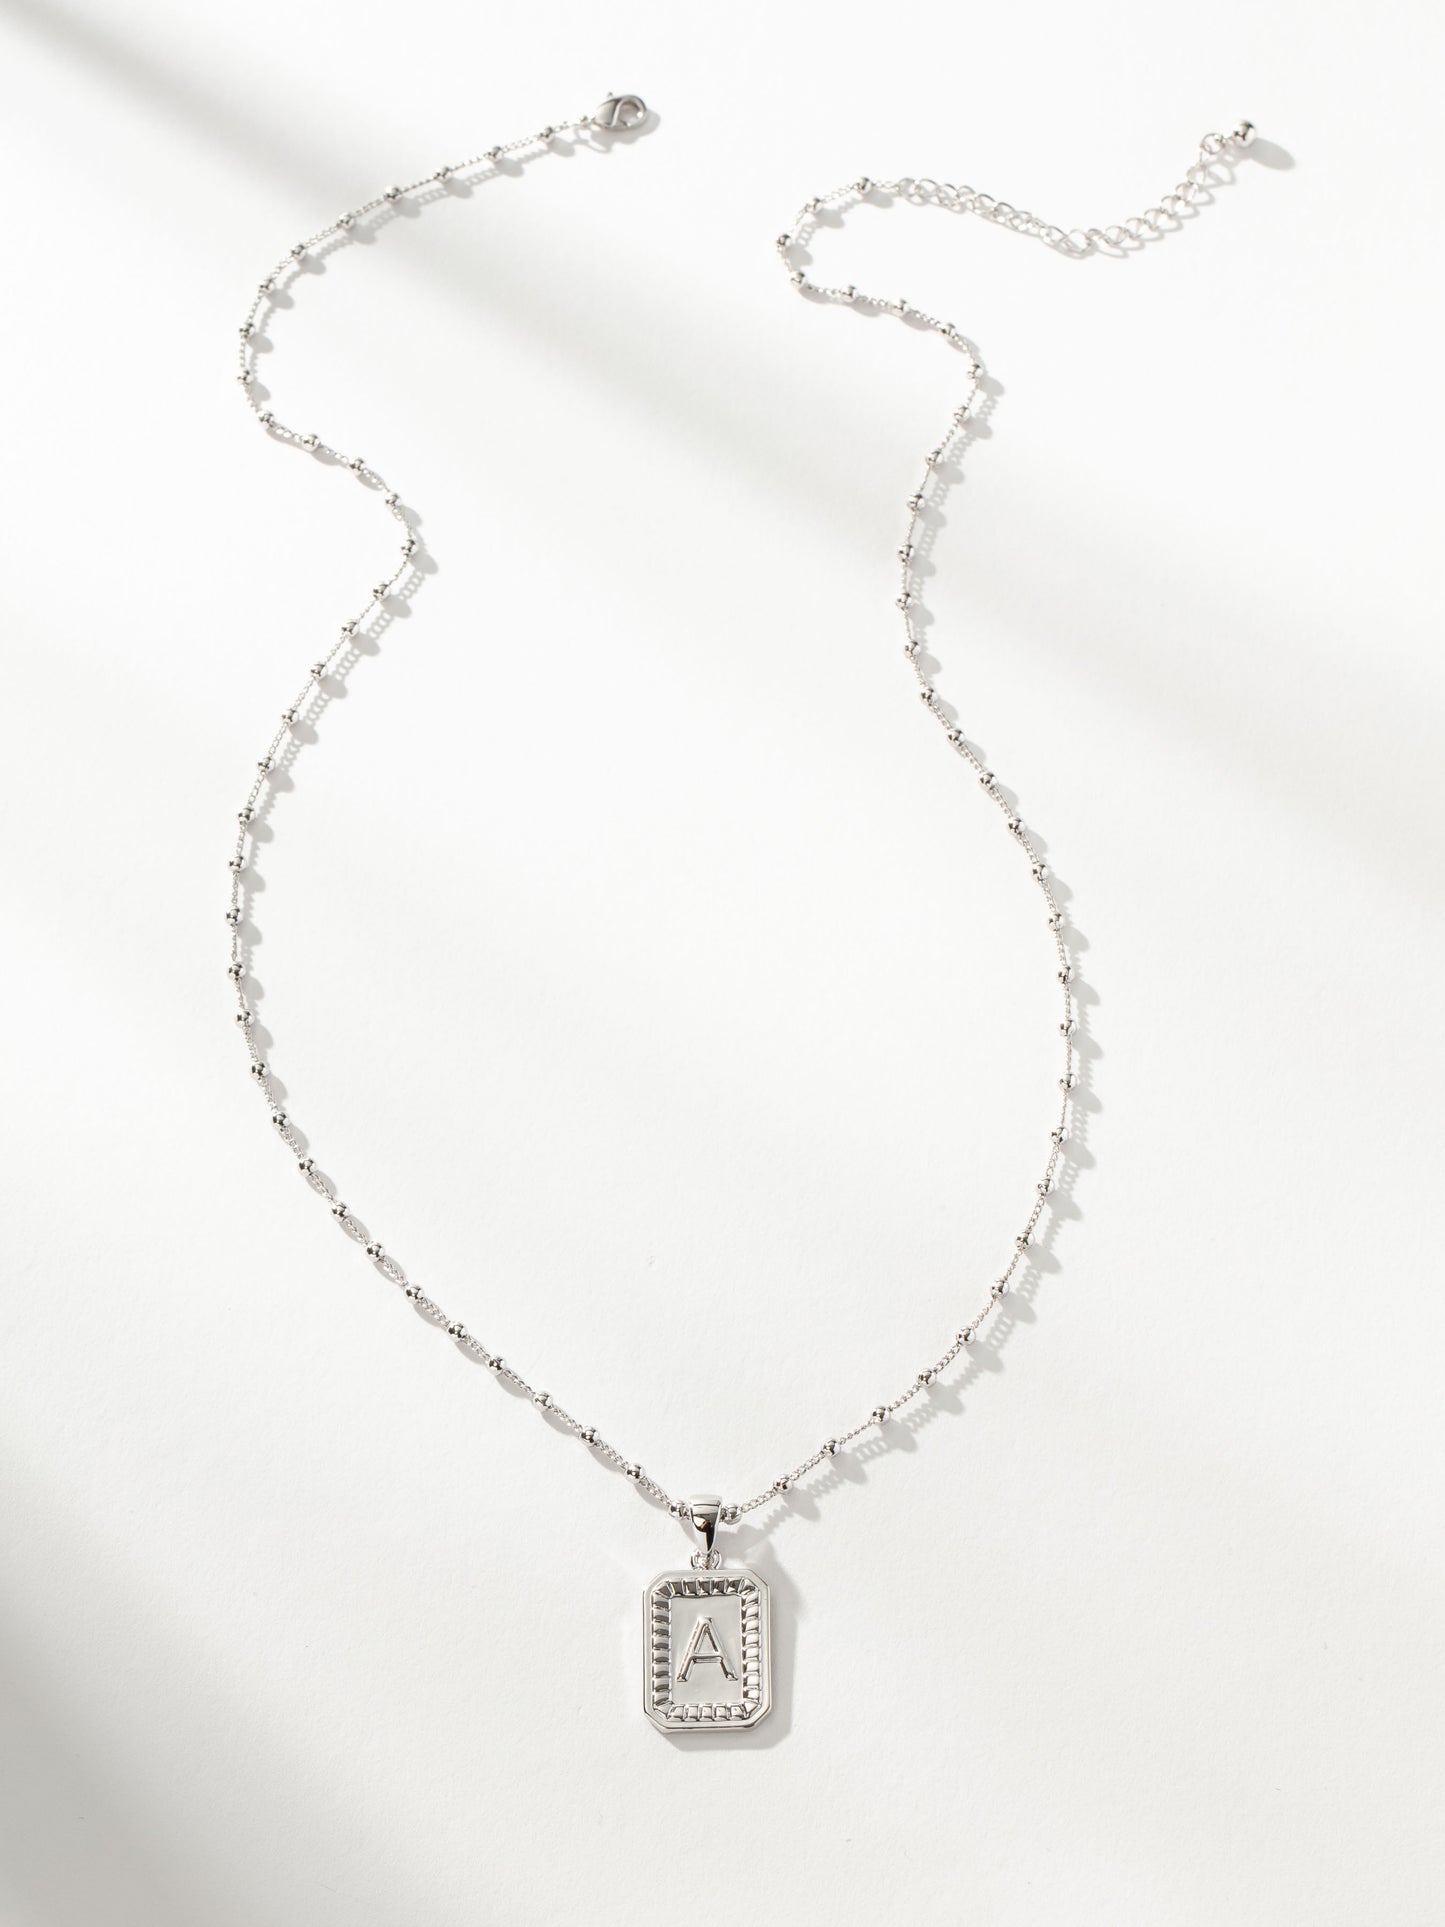 Sur Necklace | Silver | Product Image | Uncommon James